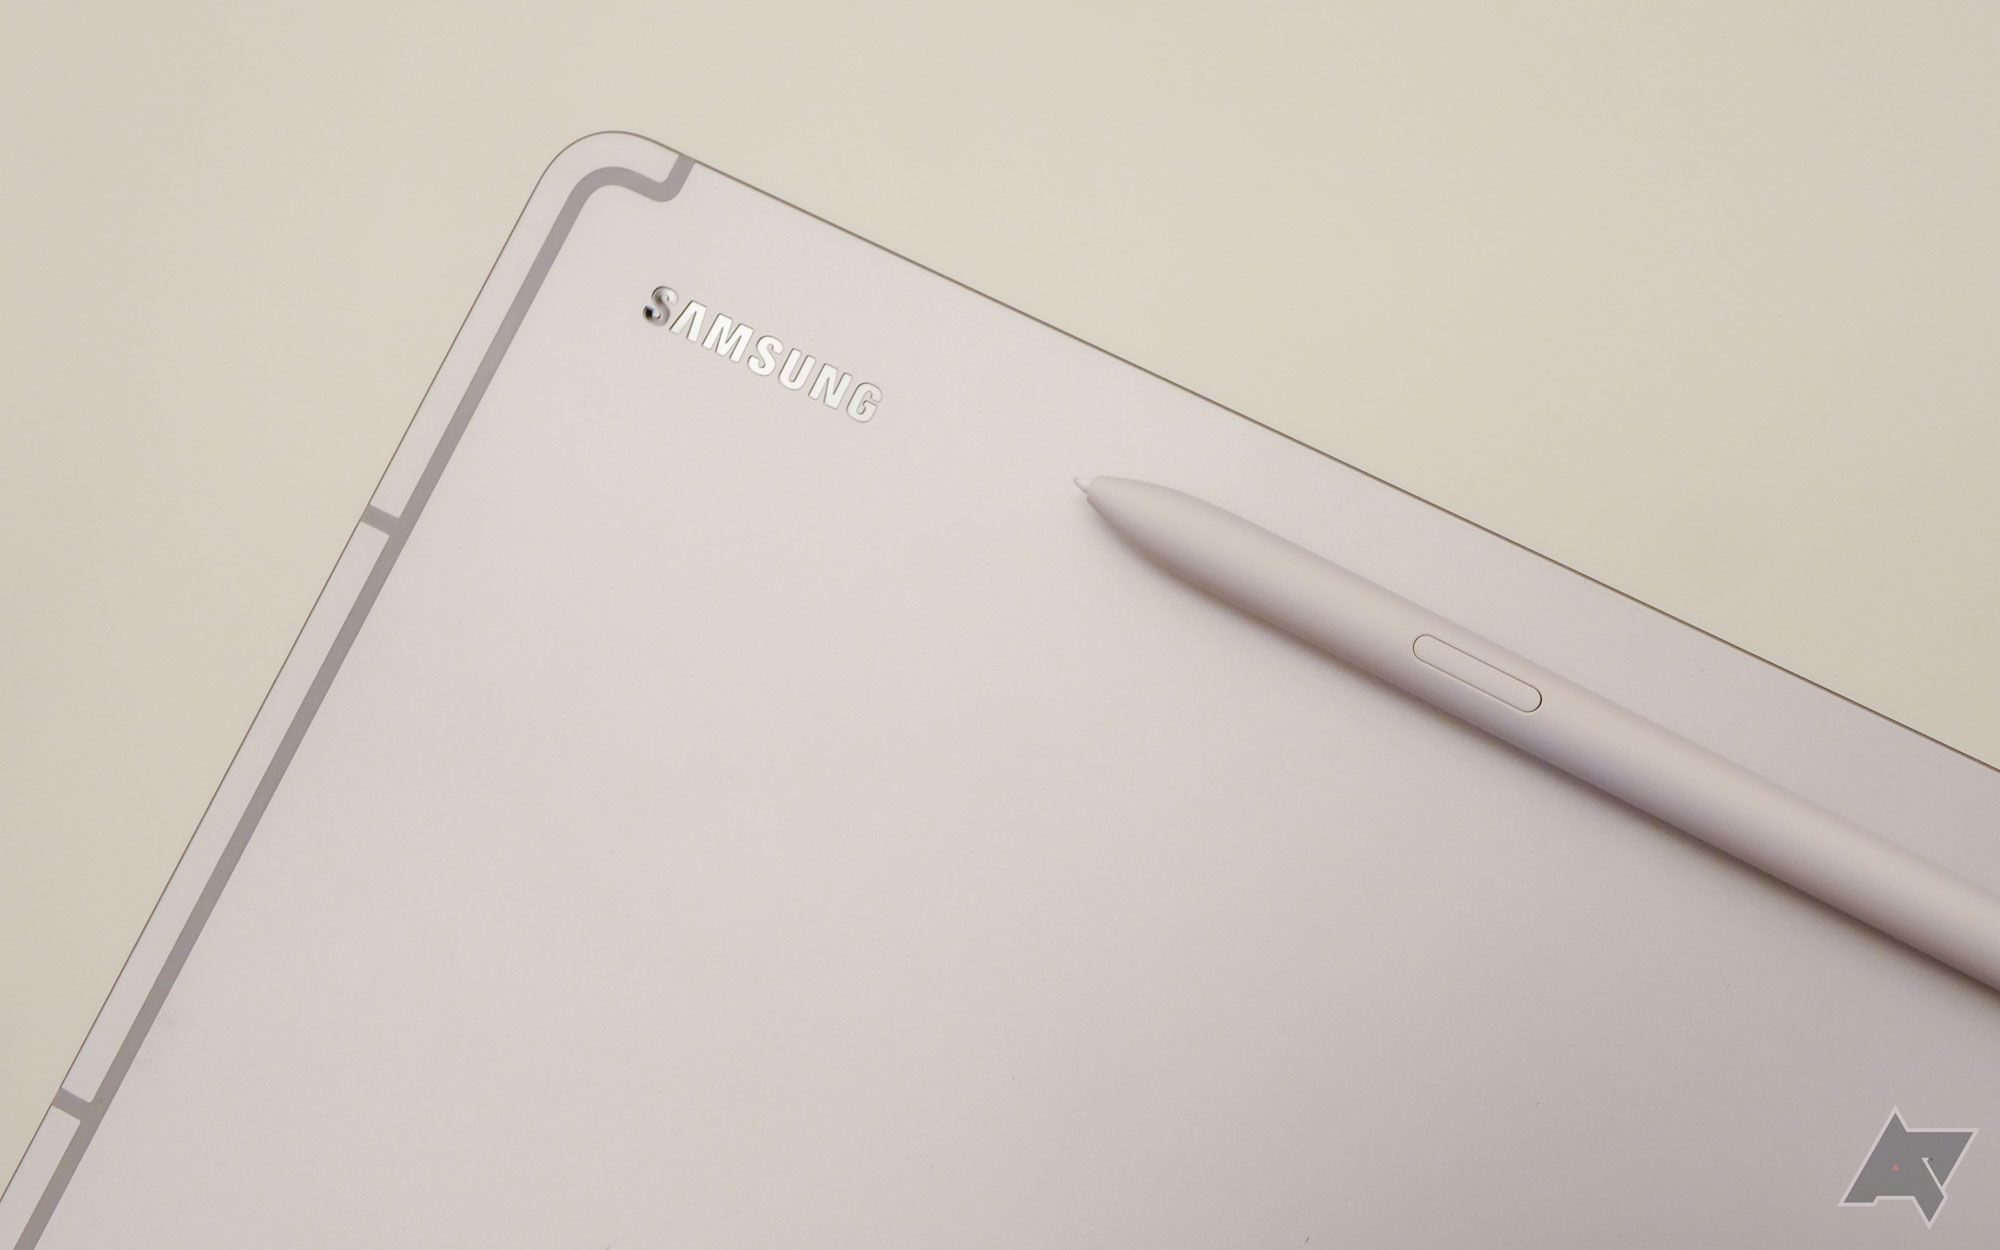 Samsung představuje FE (Fan Edition) řadu zařízení pro věrné fanoušky - smartphony, tablety a sluchátka